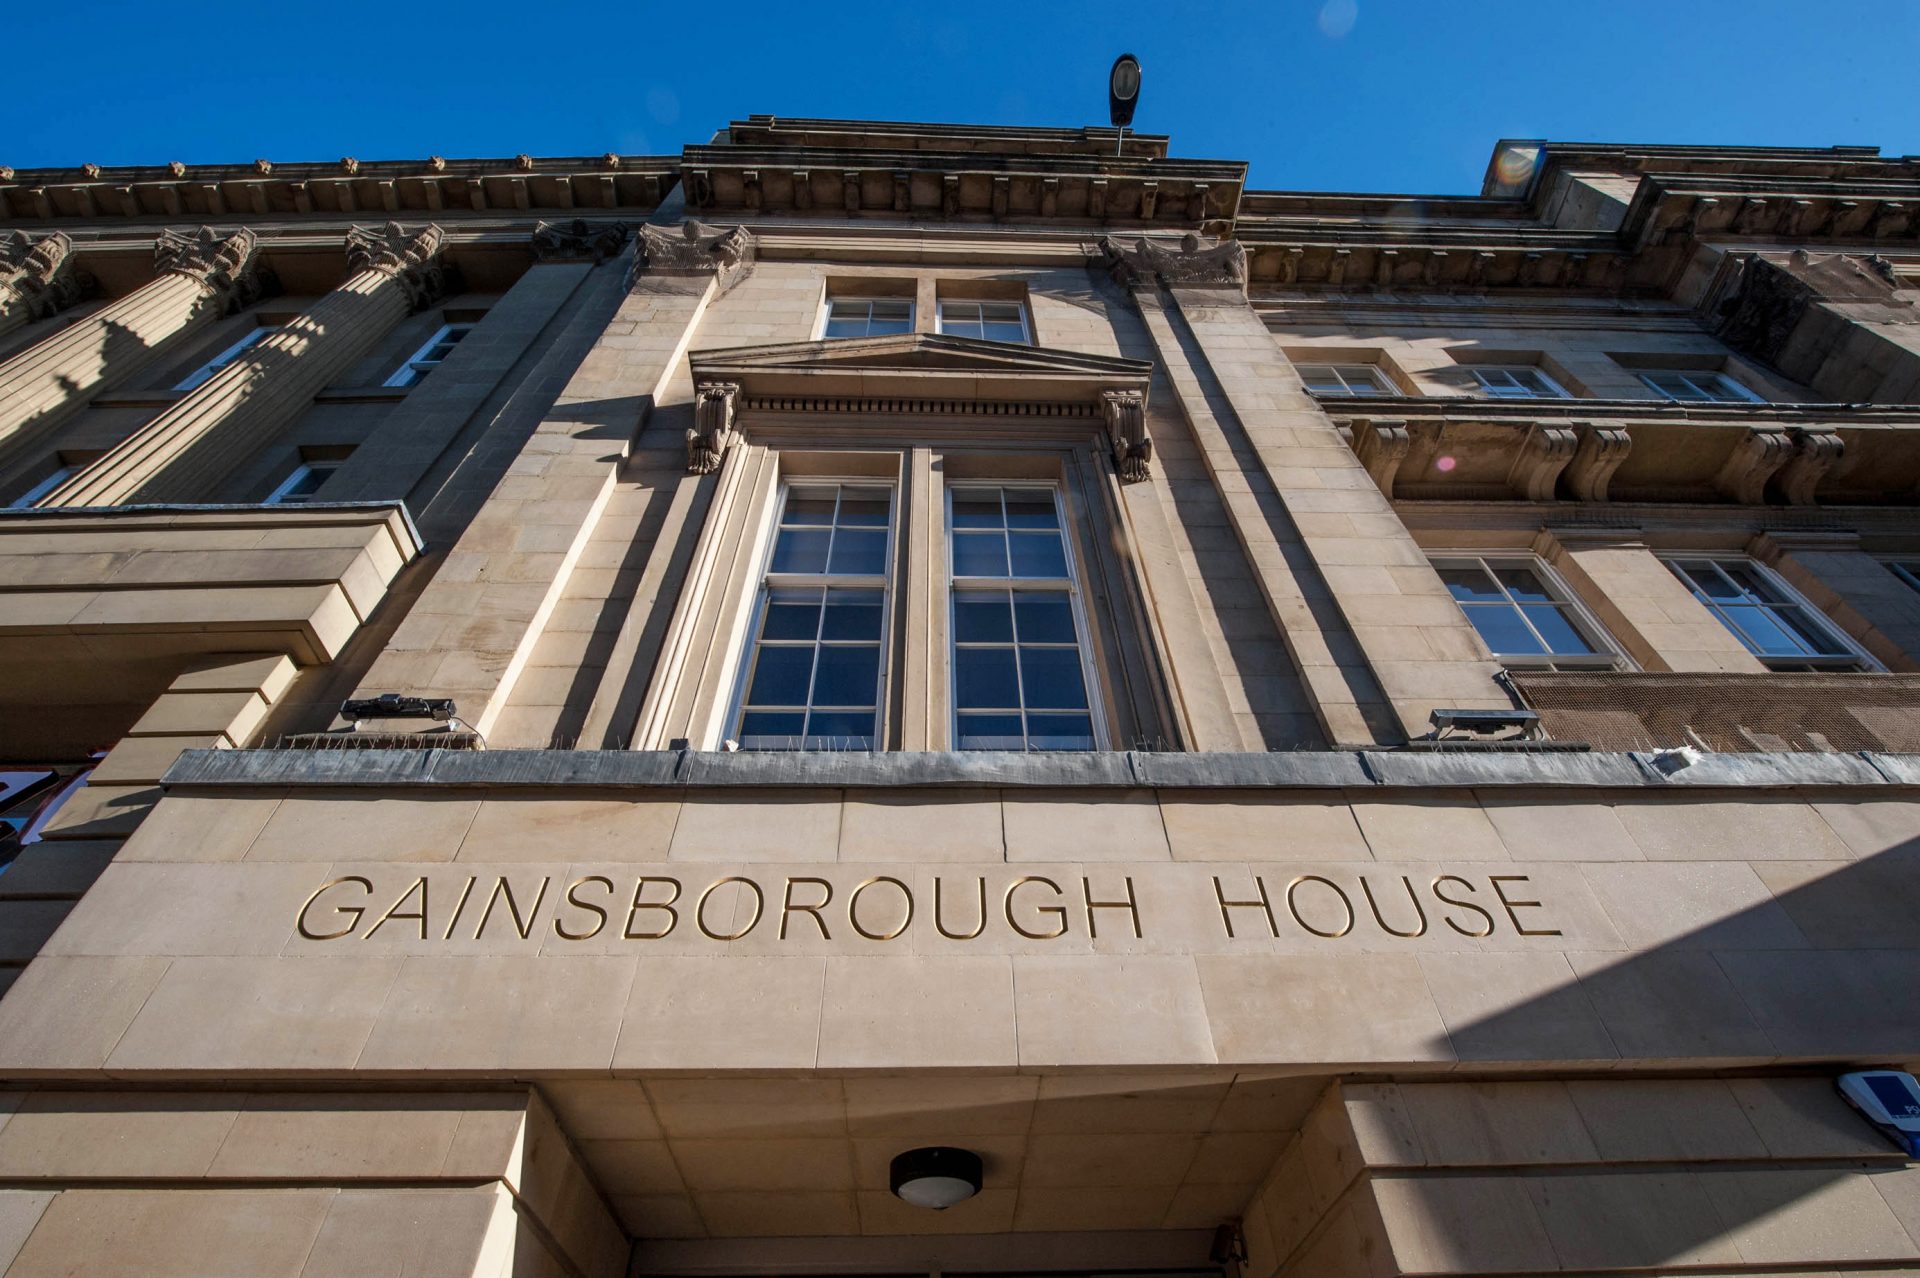 Gainsborough House